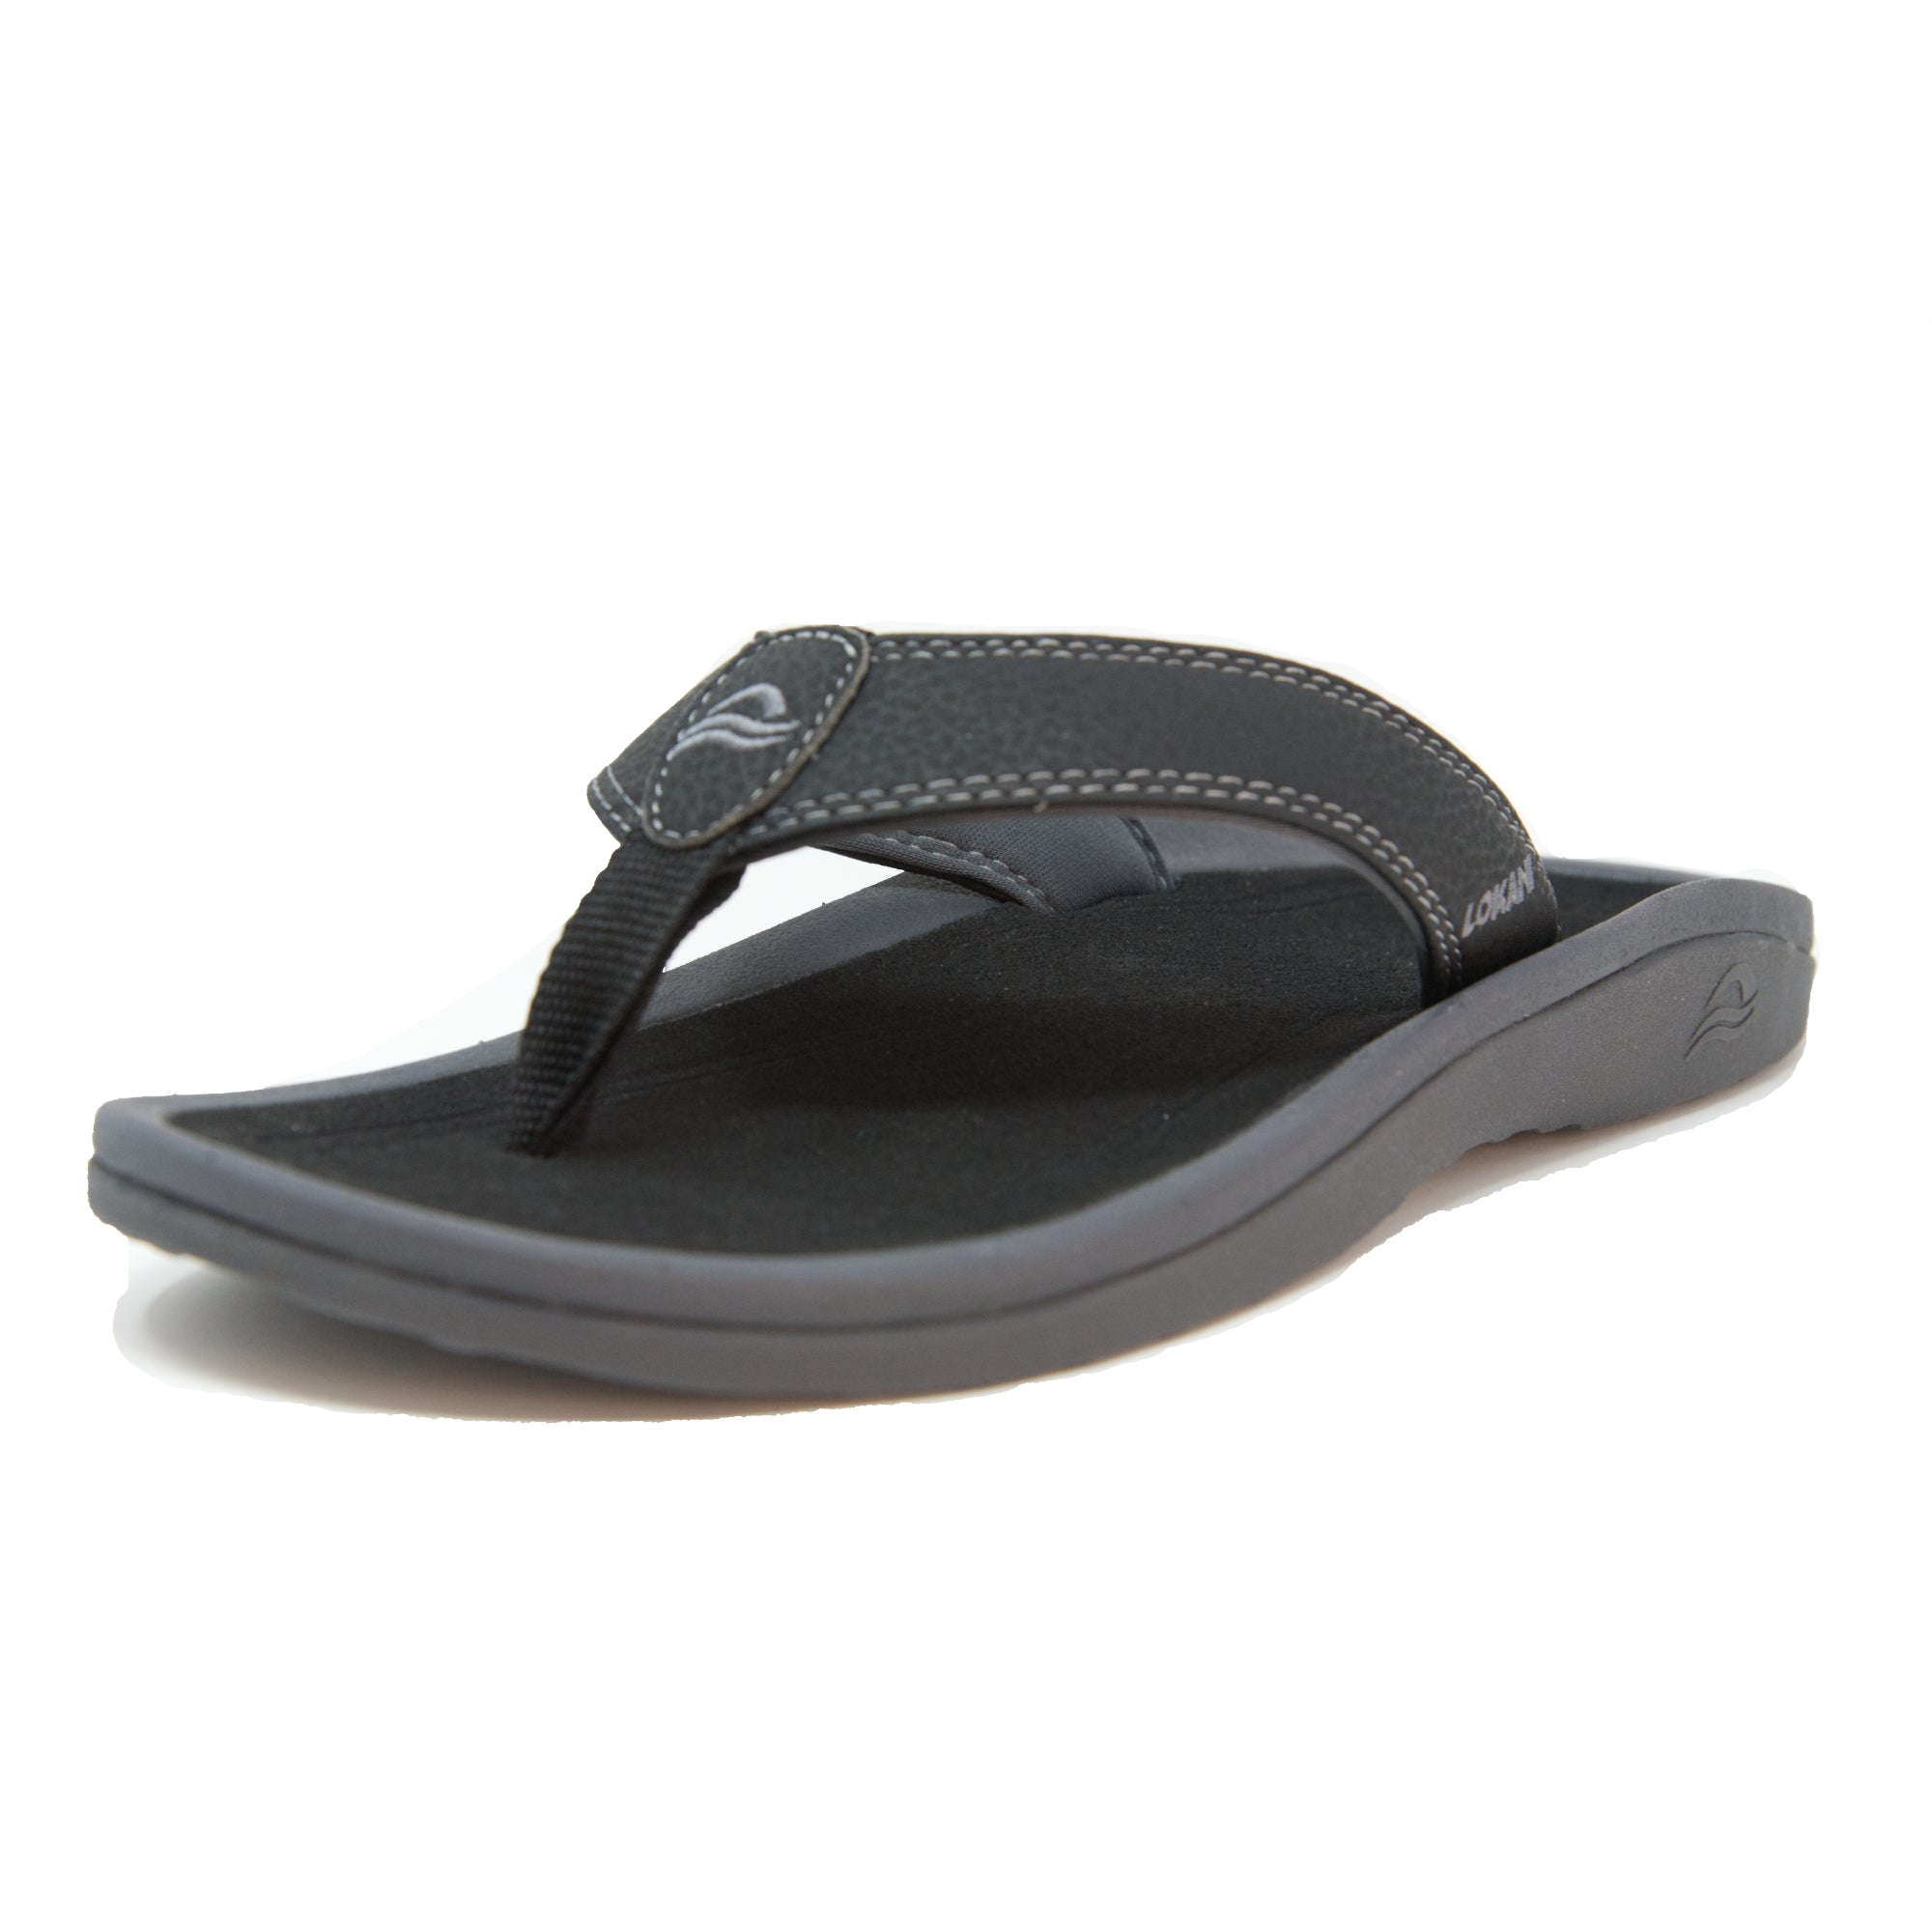 Bandini Casual Flip-Flop Sandals For Women, Summer Hollow Beach